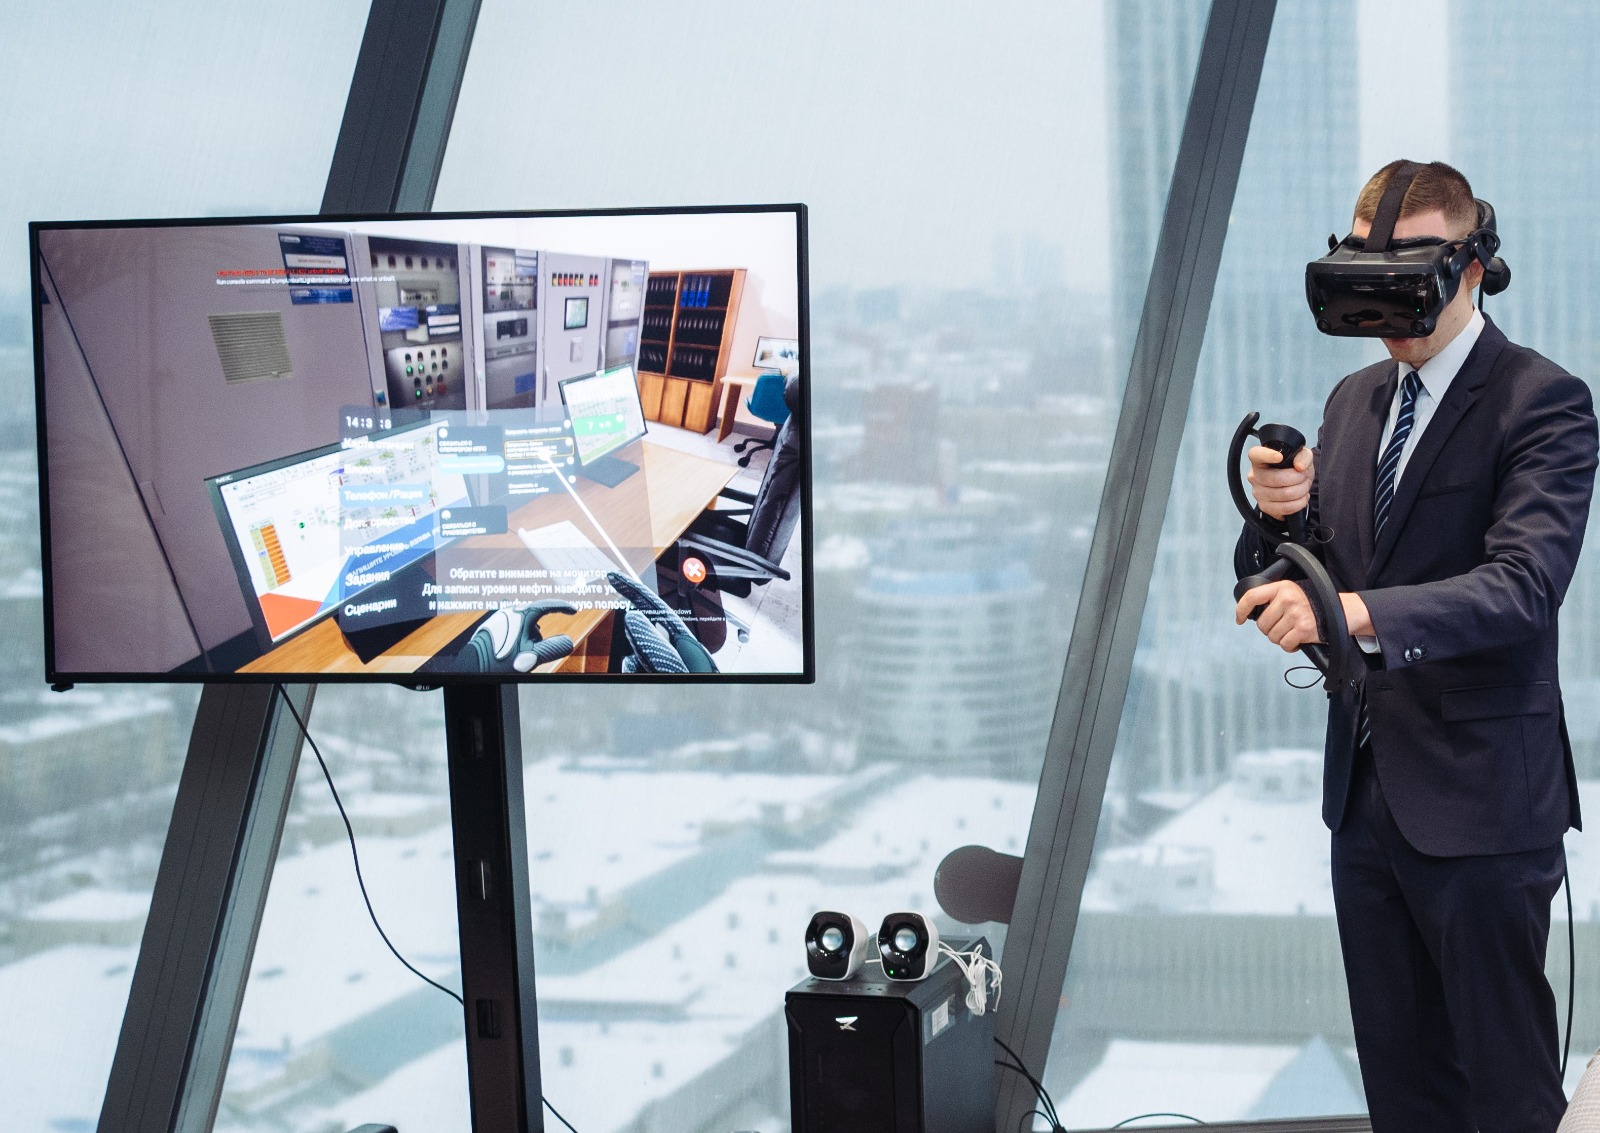 В нефтетранспортной компании разработали программу обучения работников с помощью VR-тренажеров